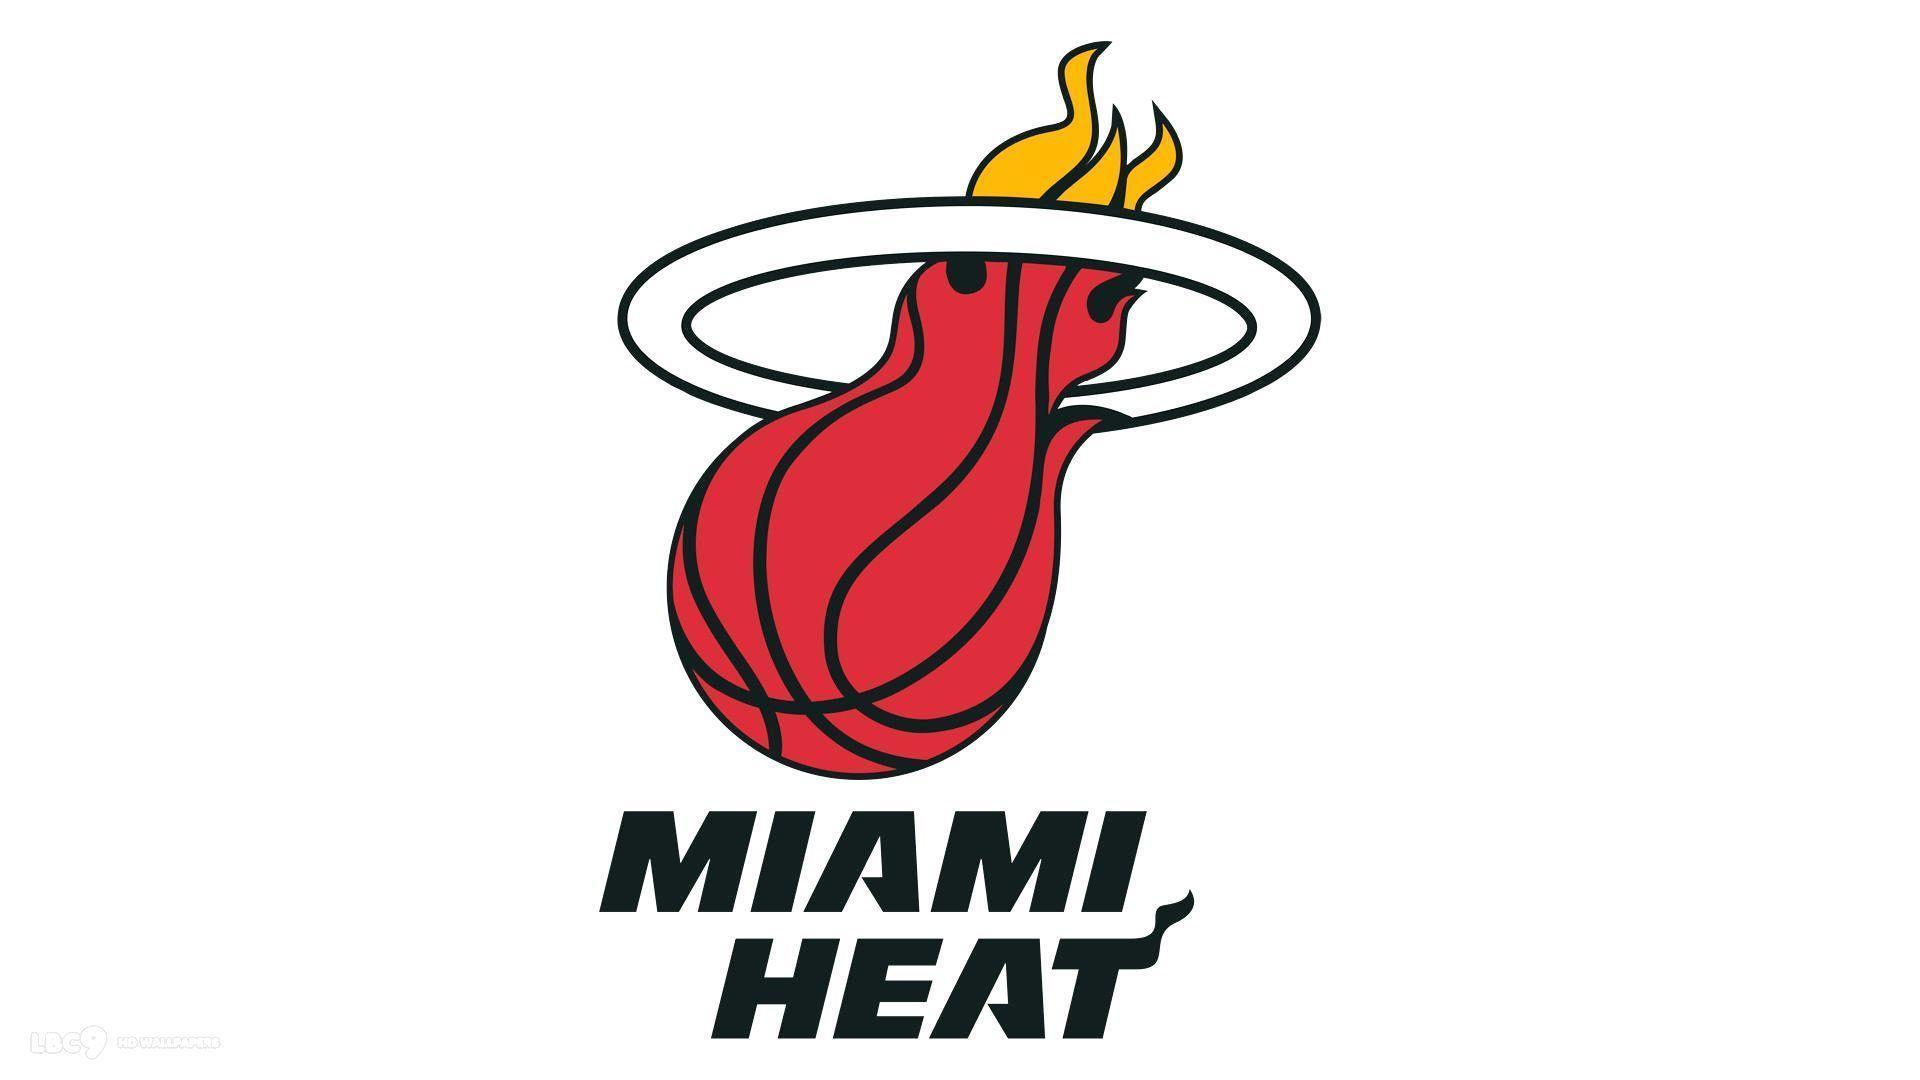 Miami Heat Logo Basketball Team Miami Heat Logo Wallpaper. NBA to